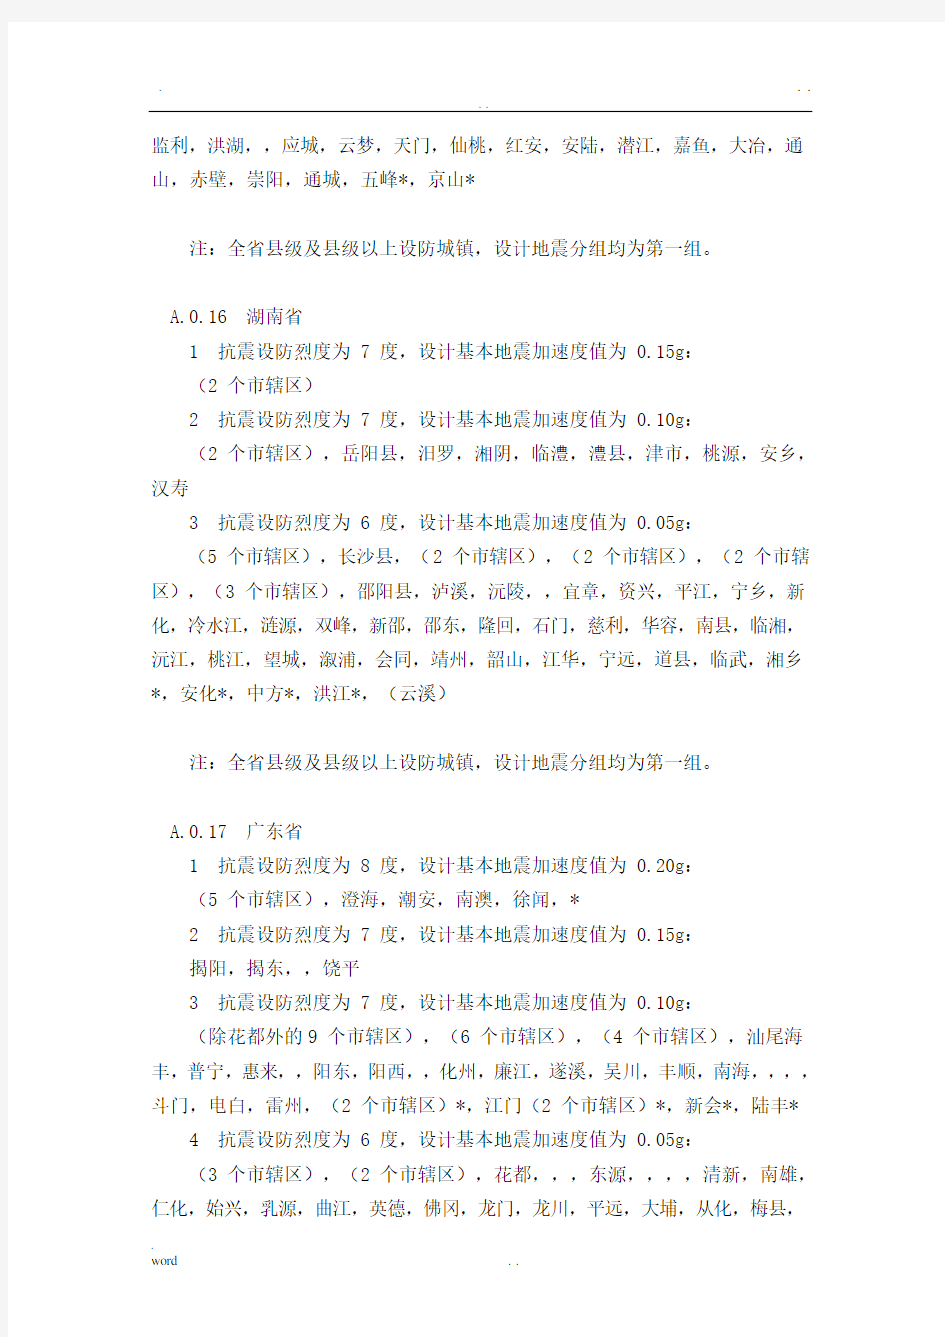 中国各地抗震设防烈度表